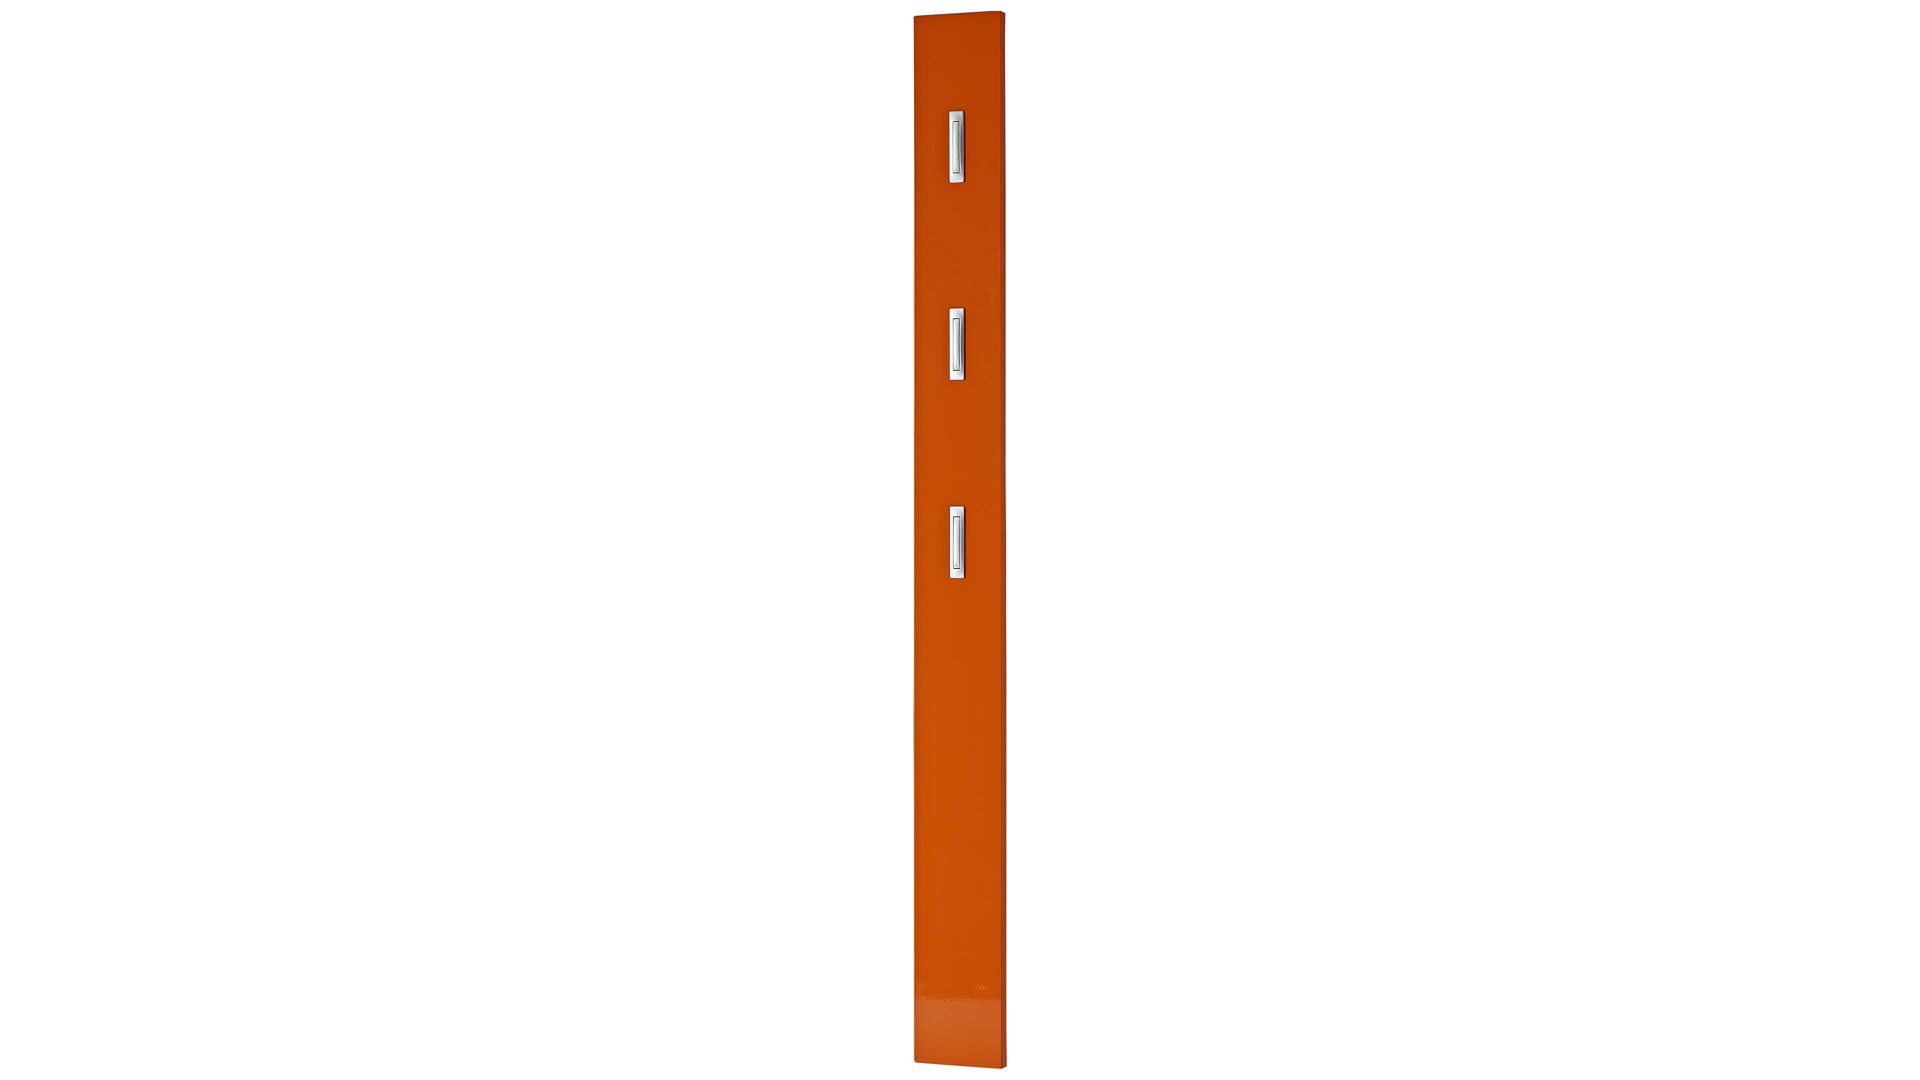 Wandgarderobe Germania aus Holz in Orange Wandgarderobe Colorado mit Garderobenhaken orangefarbene Hochglanzoberflächen - drei Klapp-Kleiderhaken